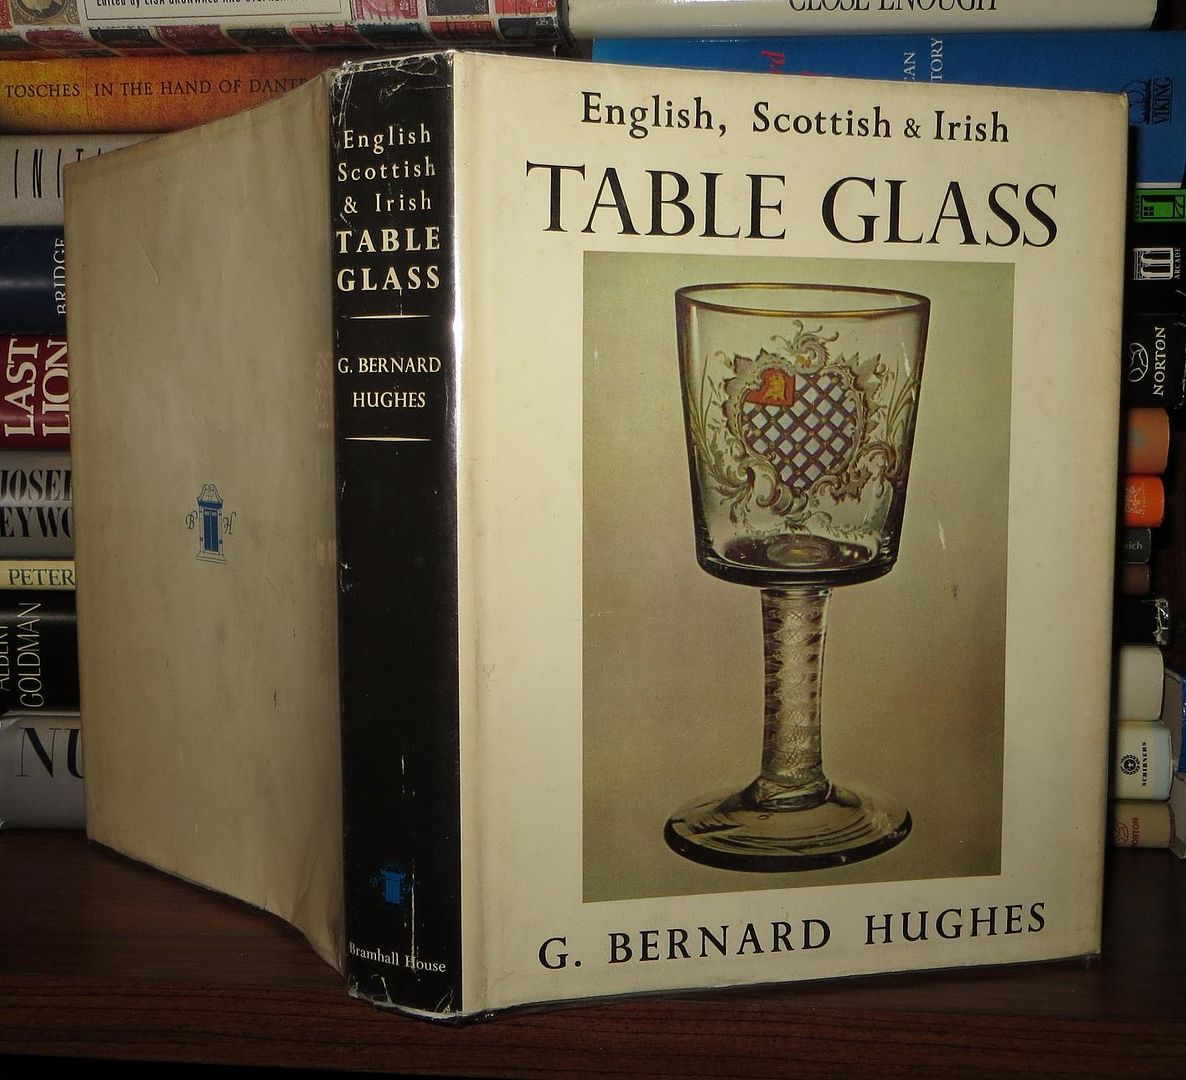 HUGHES, G. BERNARD - English, Scottish and Irish Table Glass